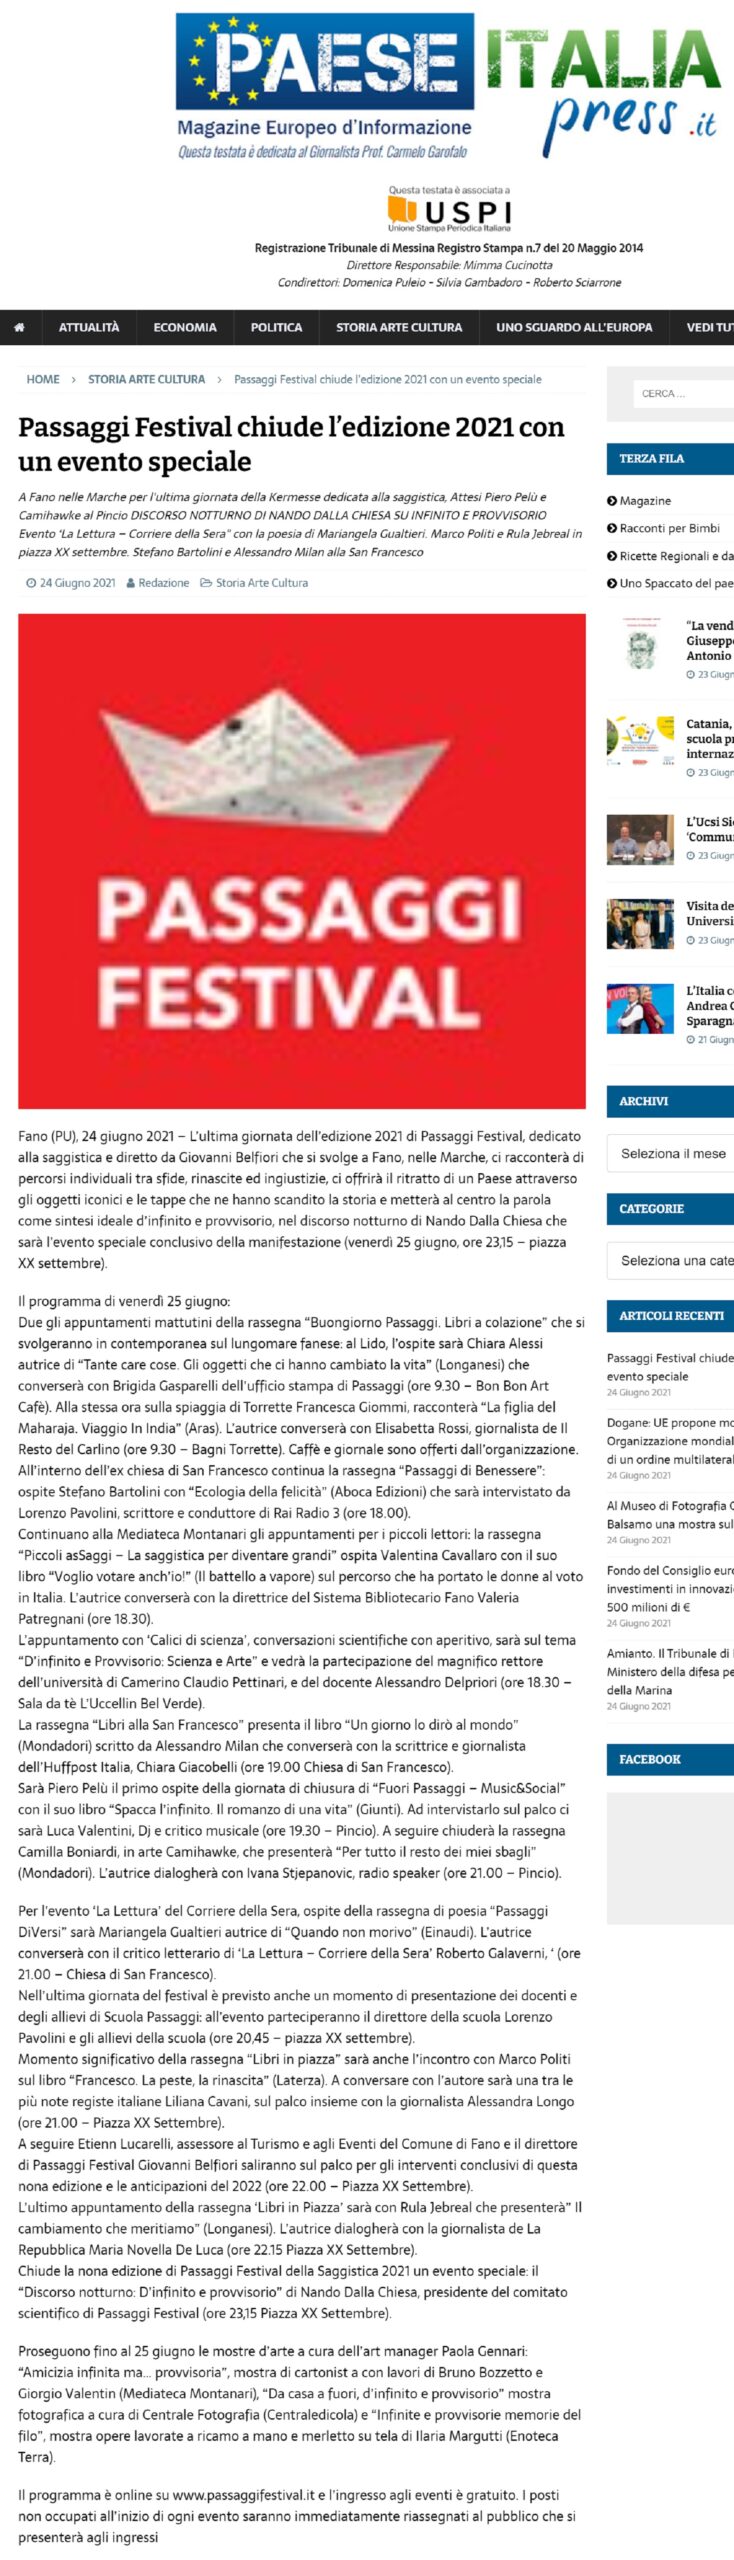 paeseitaliapress-it-passaggi-festival-chiude-ledizione-2021-con-un-evento-speciale